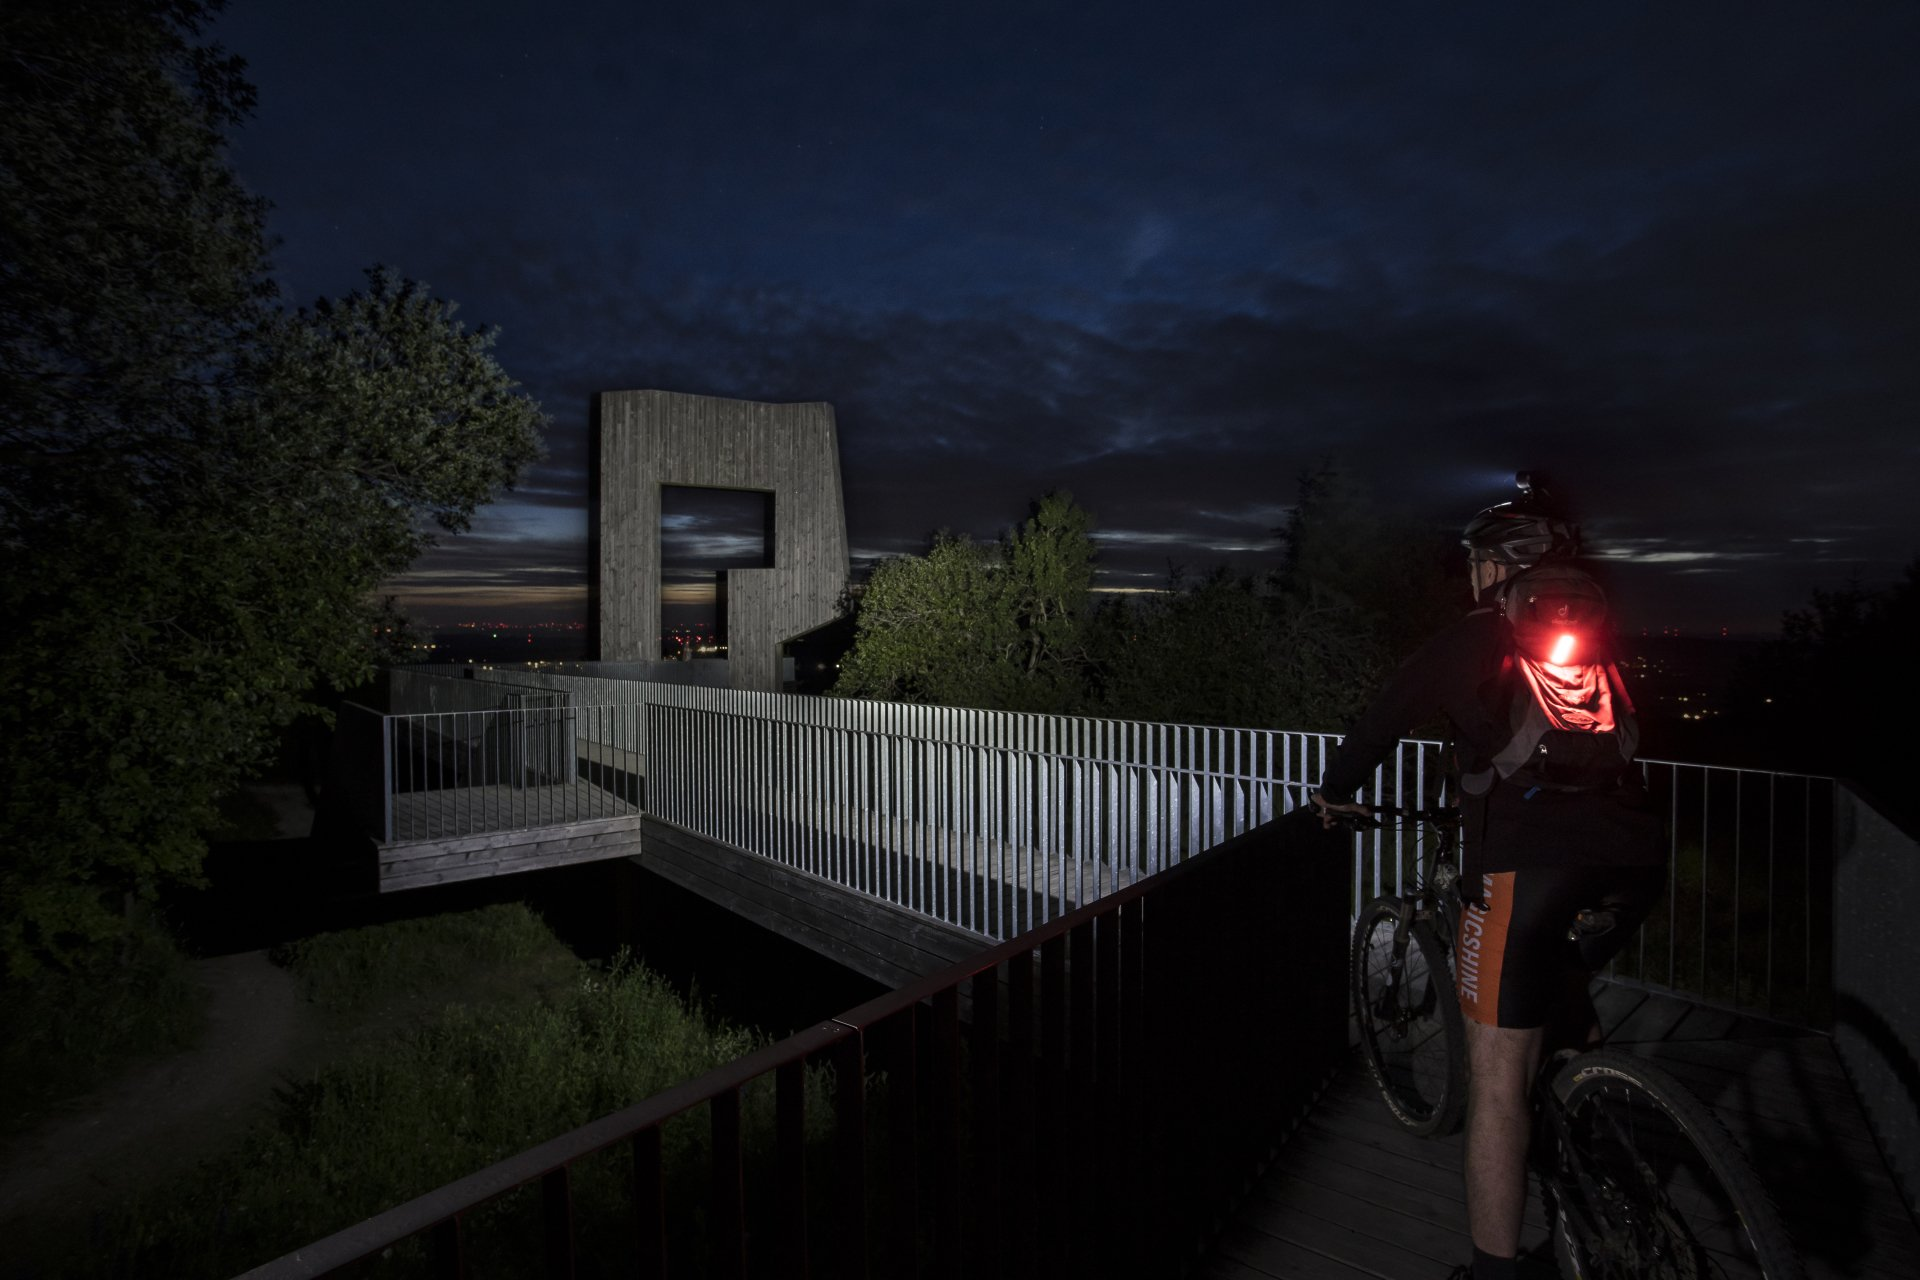 Magicshine Helmlampe Monteer 6500 mit 6 Leuchten bei Sonnenuntergang im Wald und auf der Wiese mit dem Fahrrad oder Mountainbike, offroad inklusive Rücklicht des Fahrradfahrers SeeMee 180